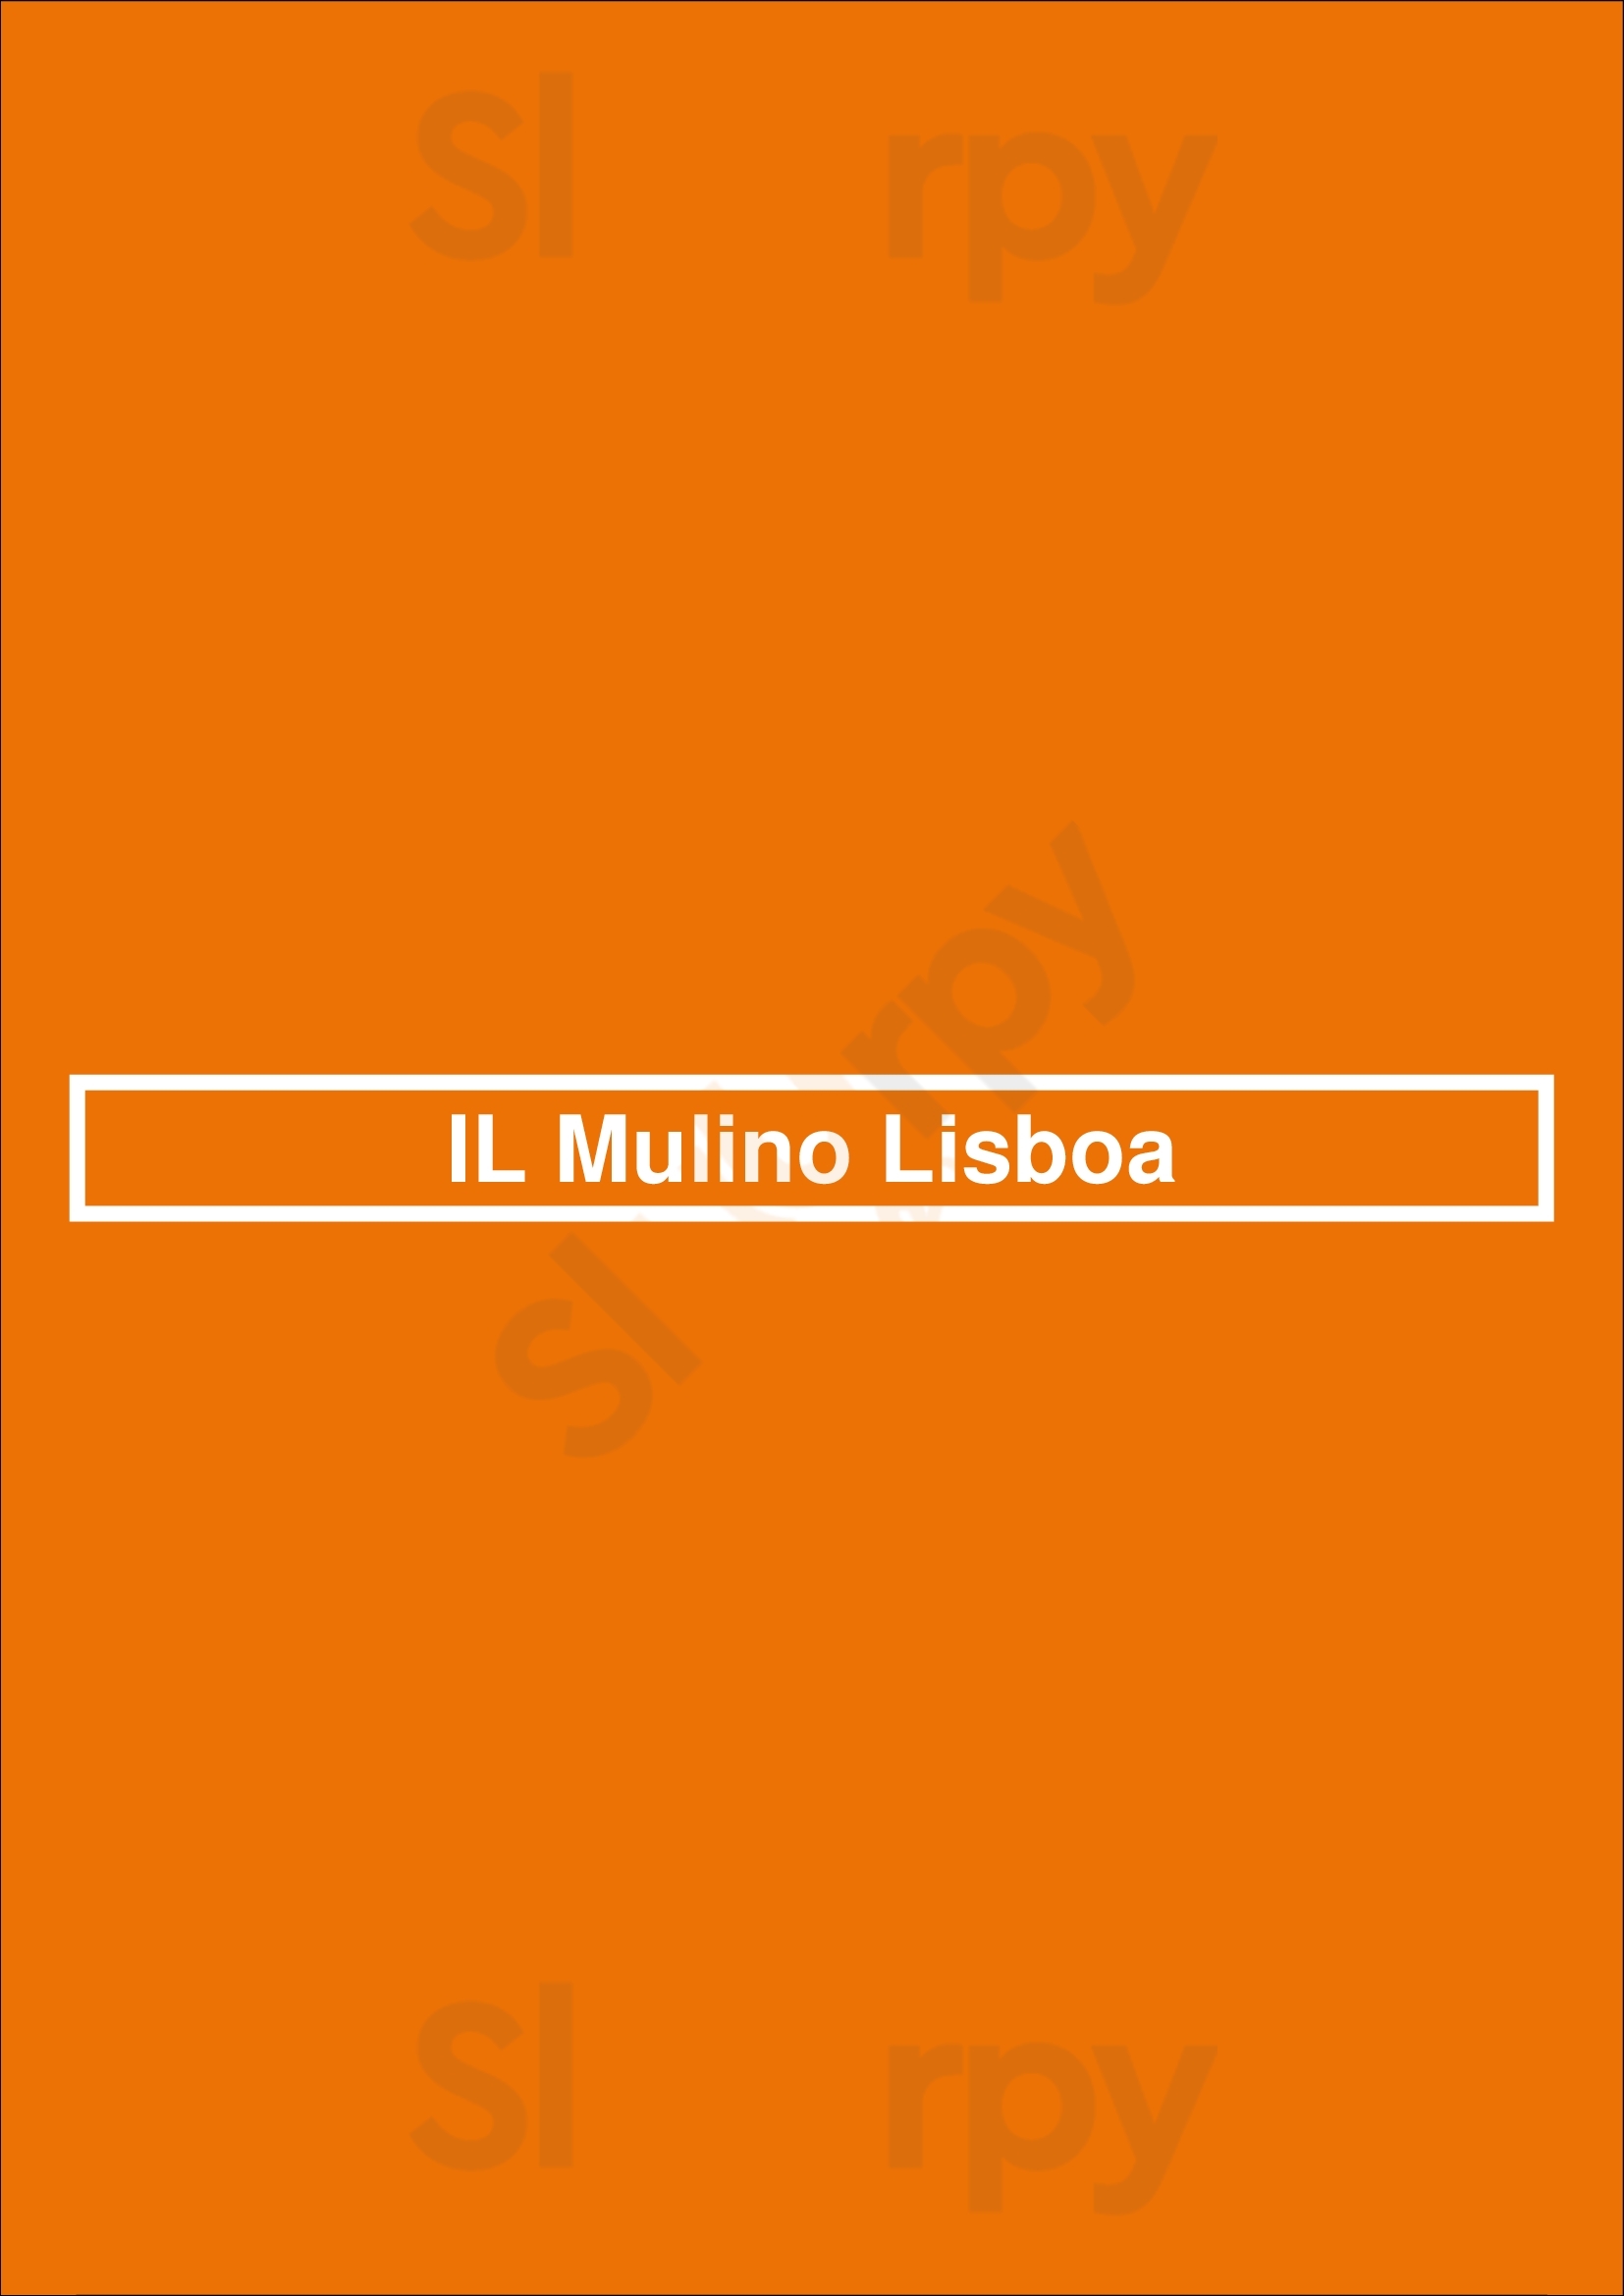 Il Mulino Lisboa Lisboa Menu - 1